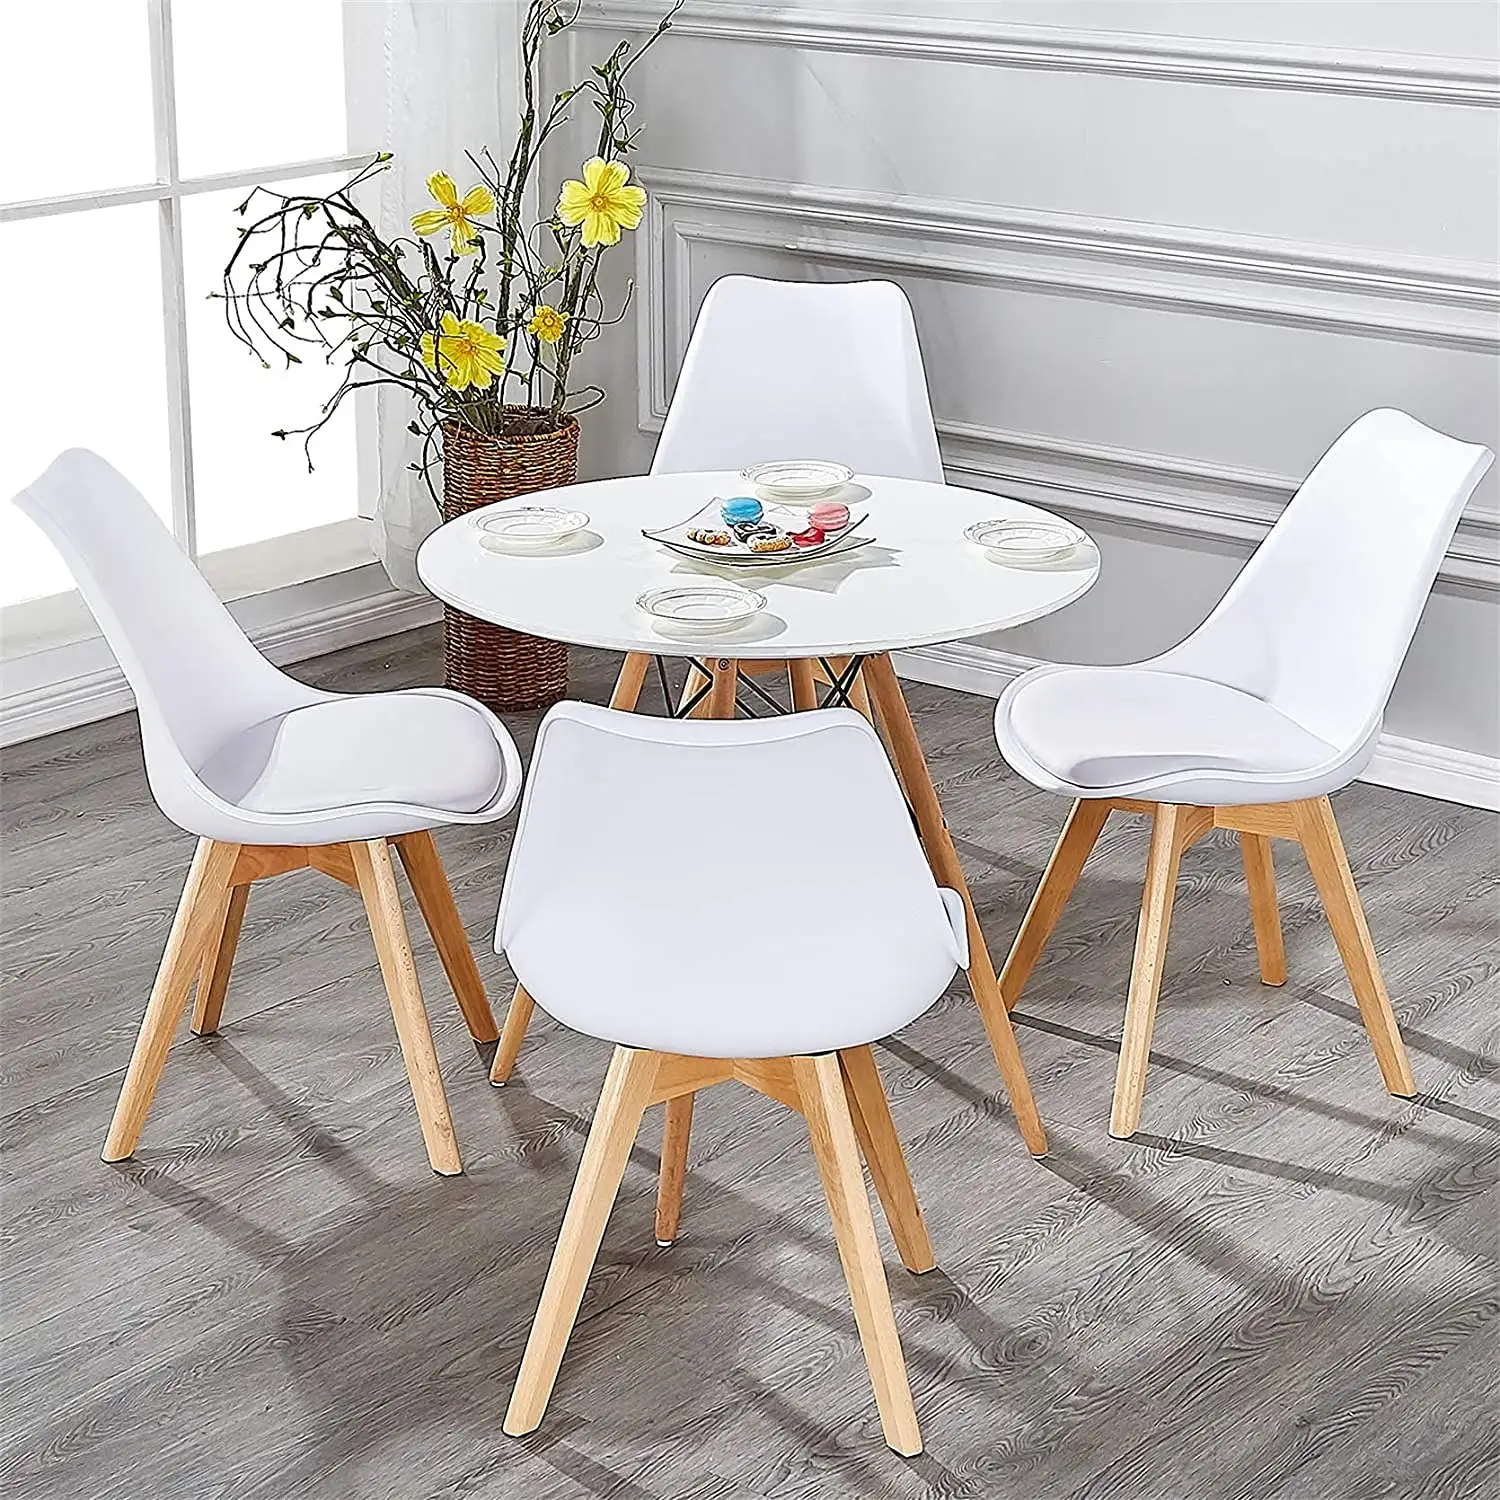 Muebles de comedor de calidad, juego de mesa de comedor de MDF con patas de madera de haya, ahorro de espacio, plástico blanco, 4 sillas